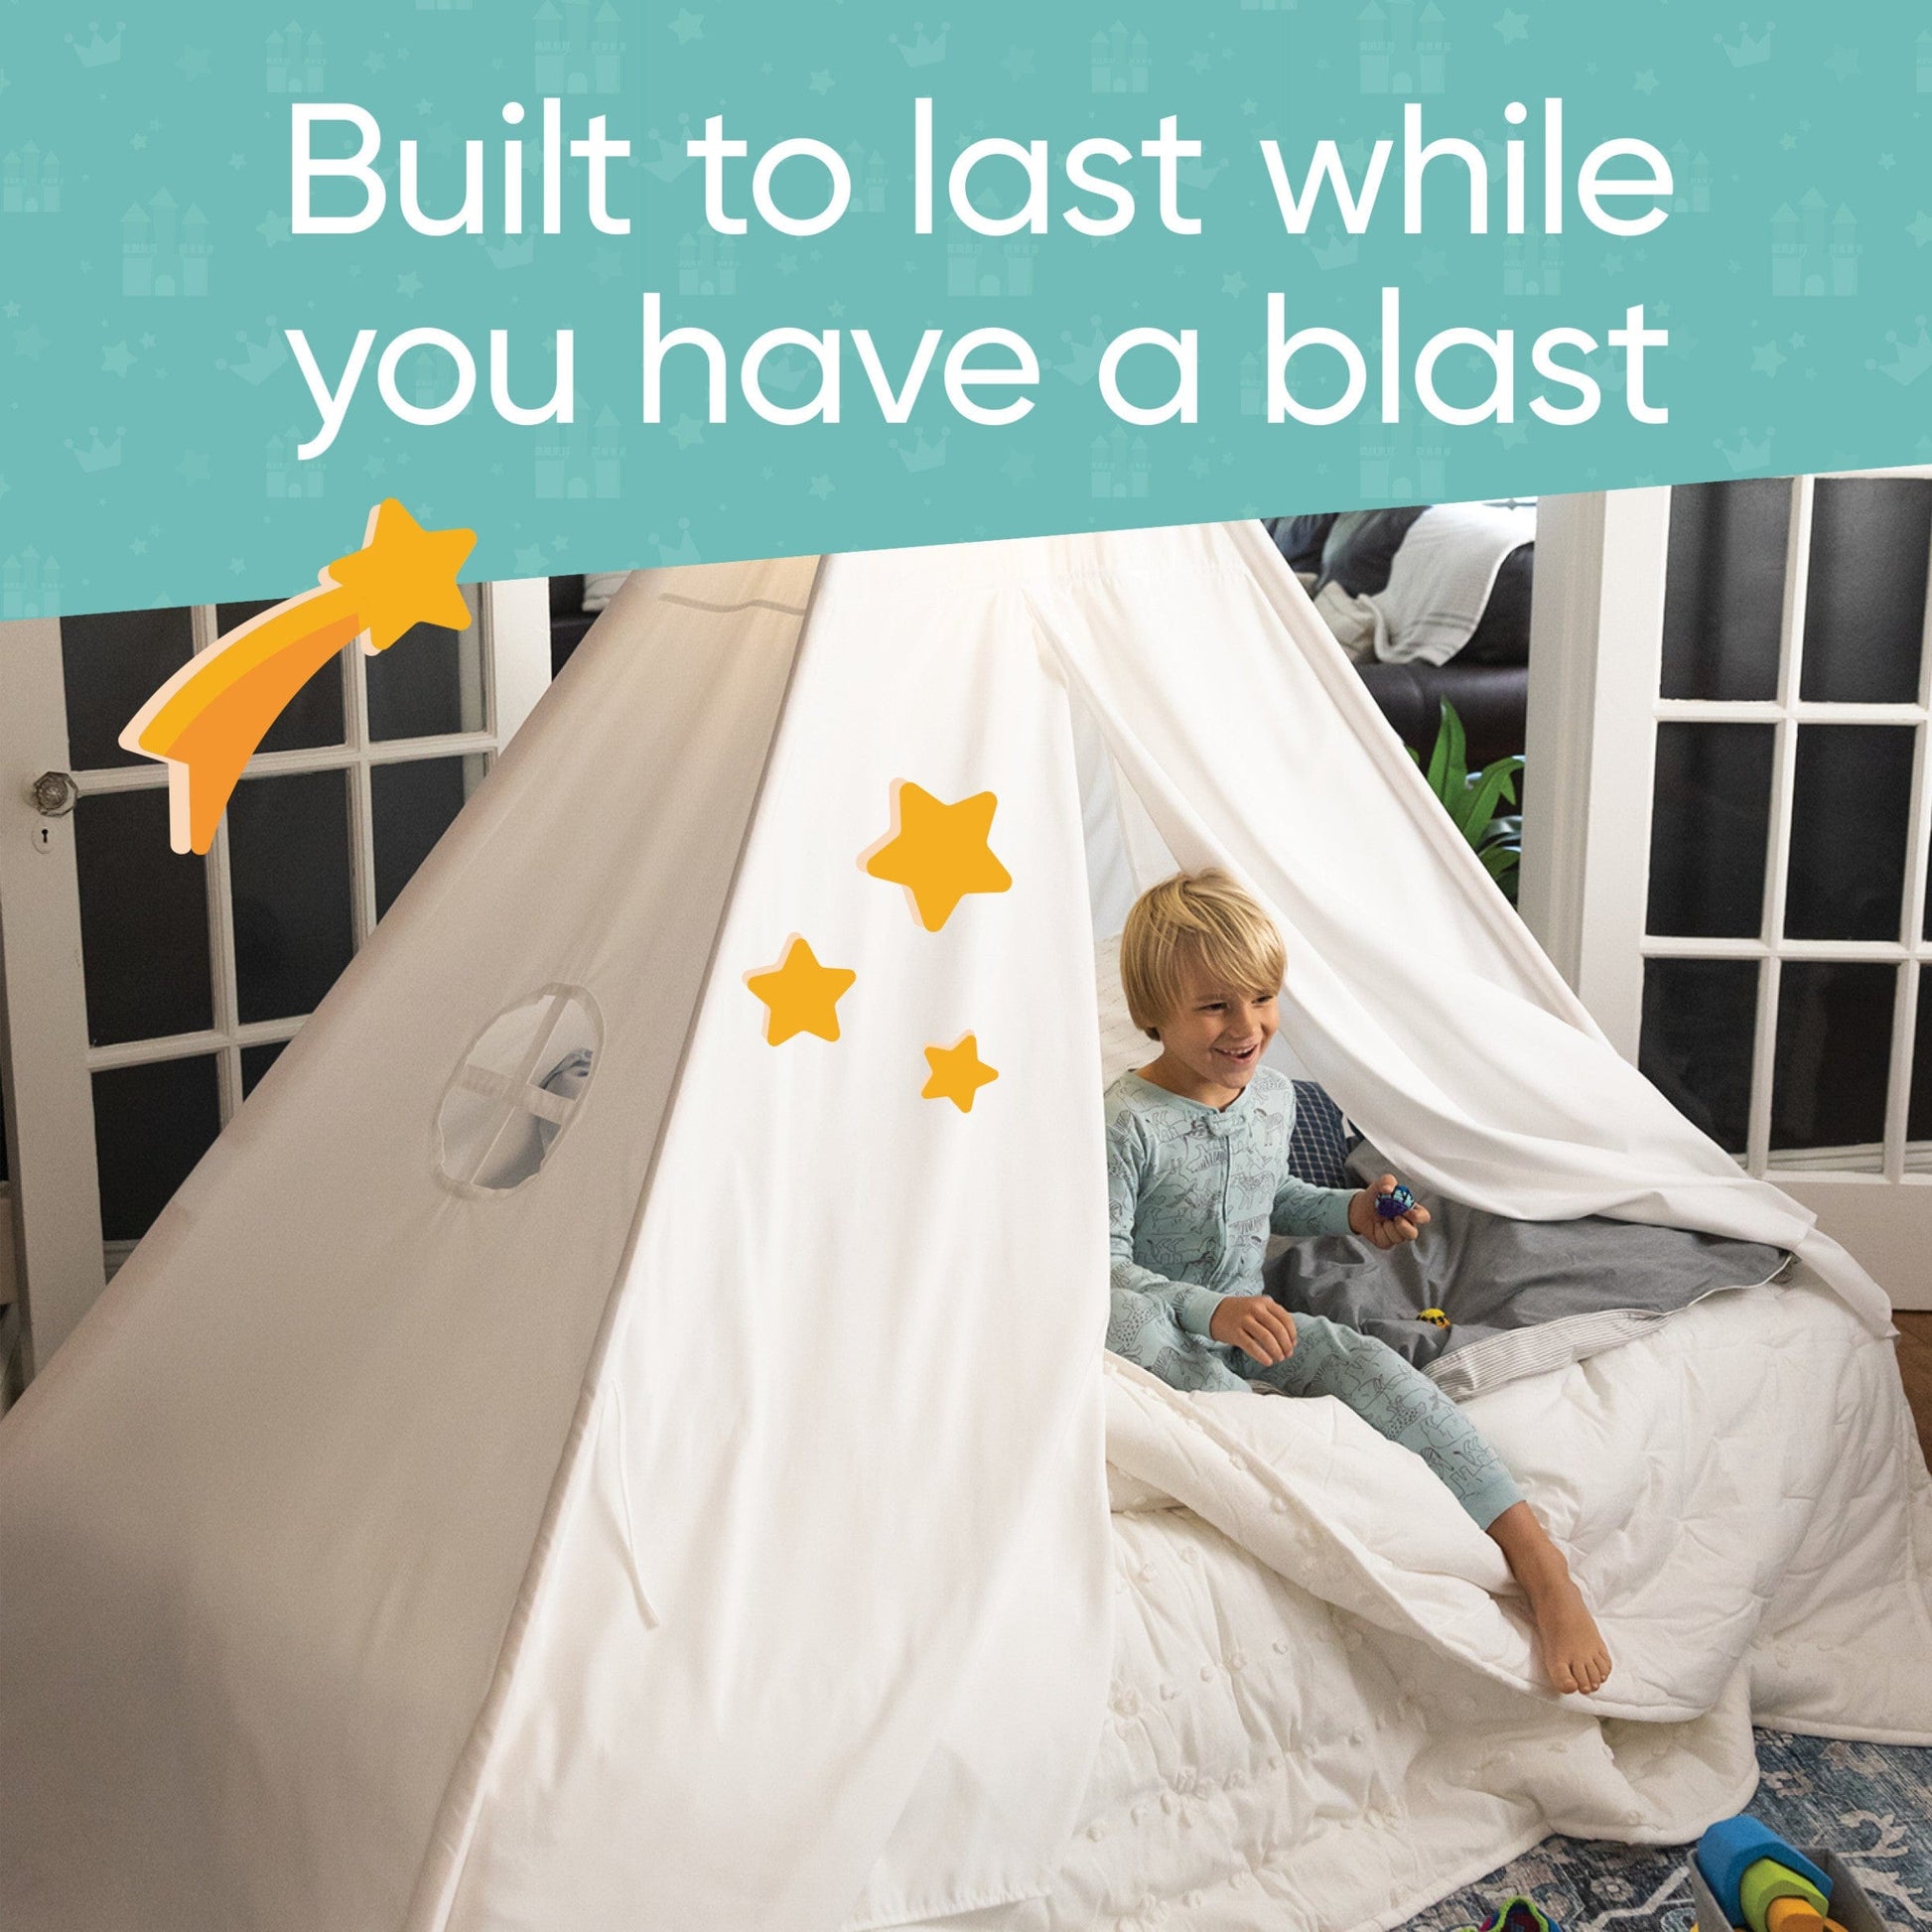 Cabin Dreams Bed Tent